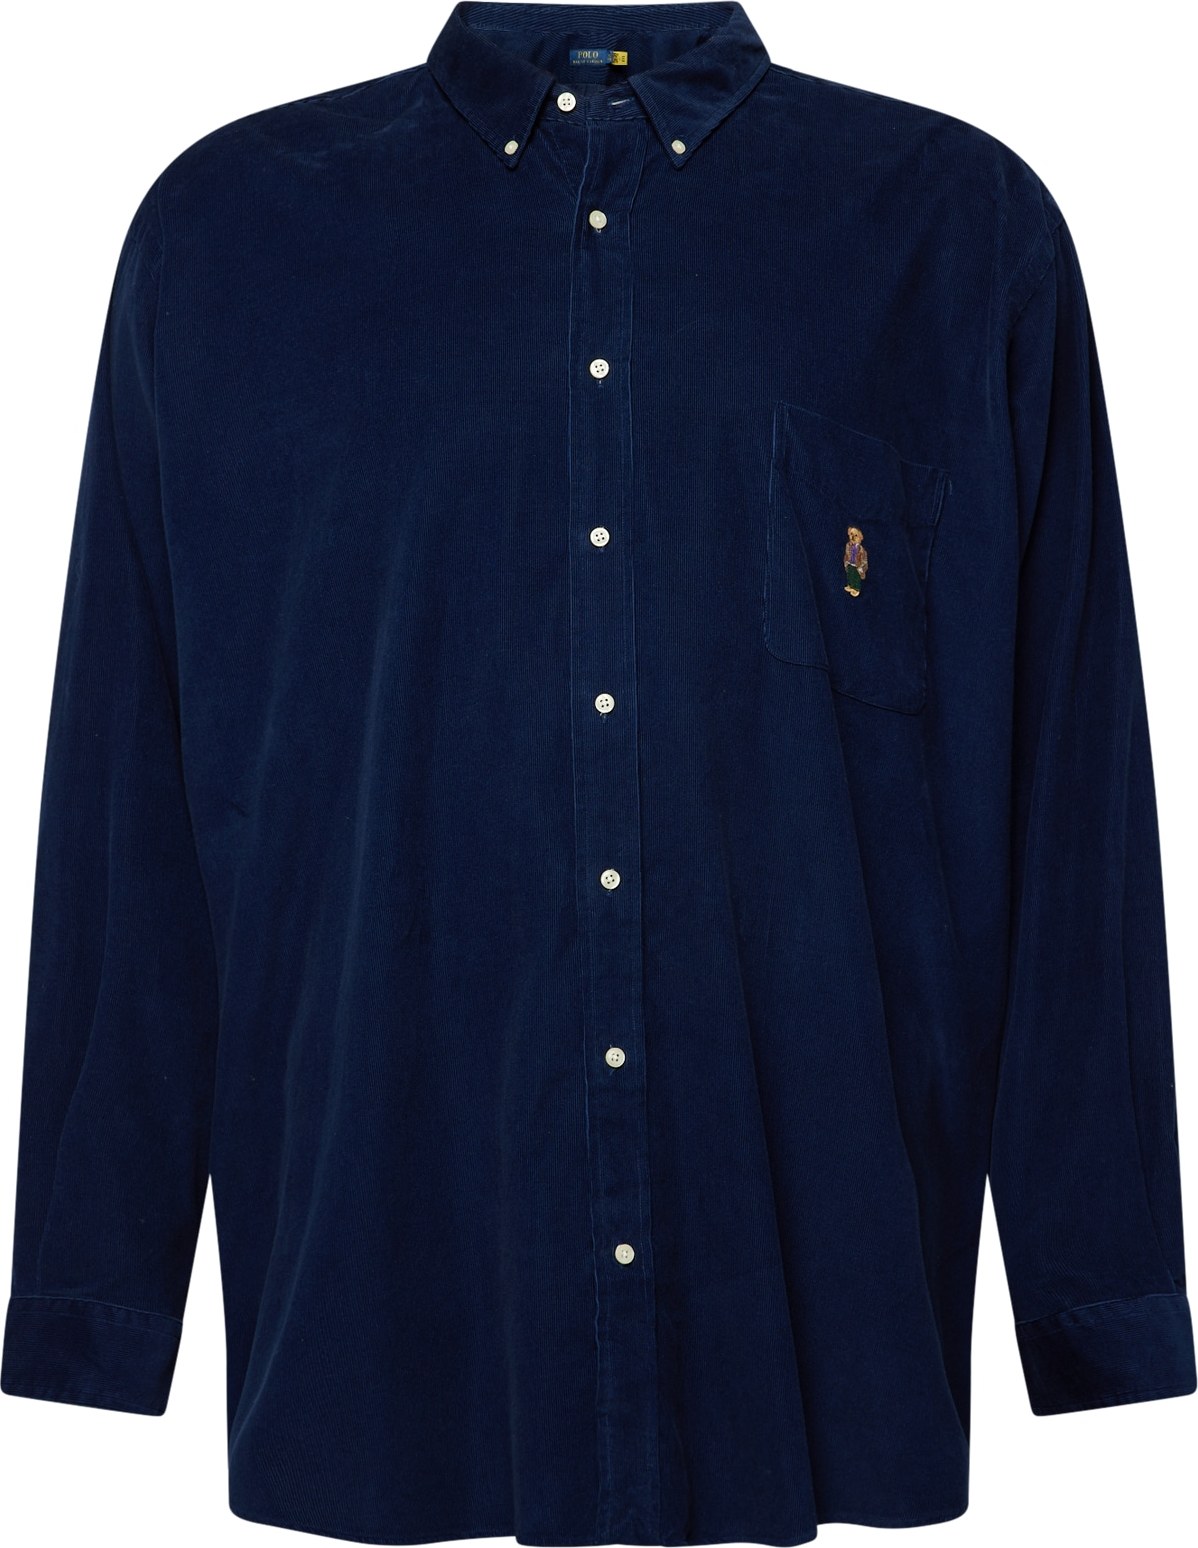 Košile Polo Ralph Lauren Big & Tall námořnická modř